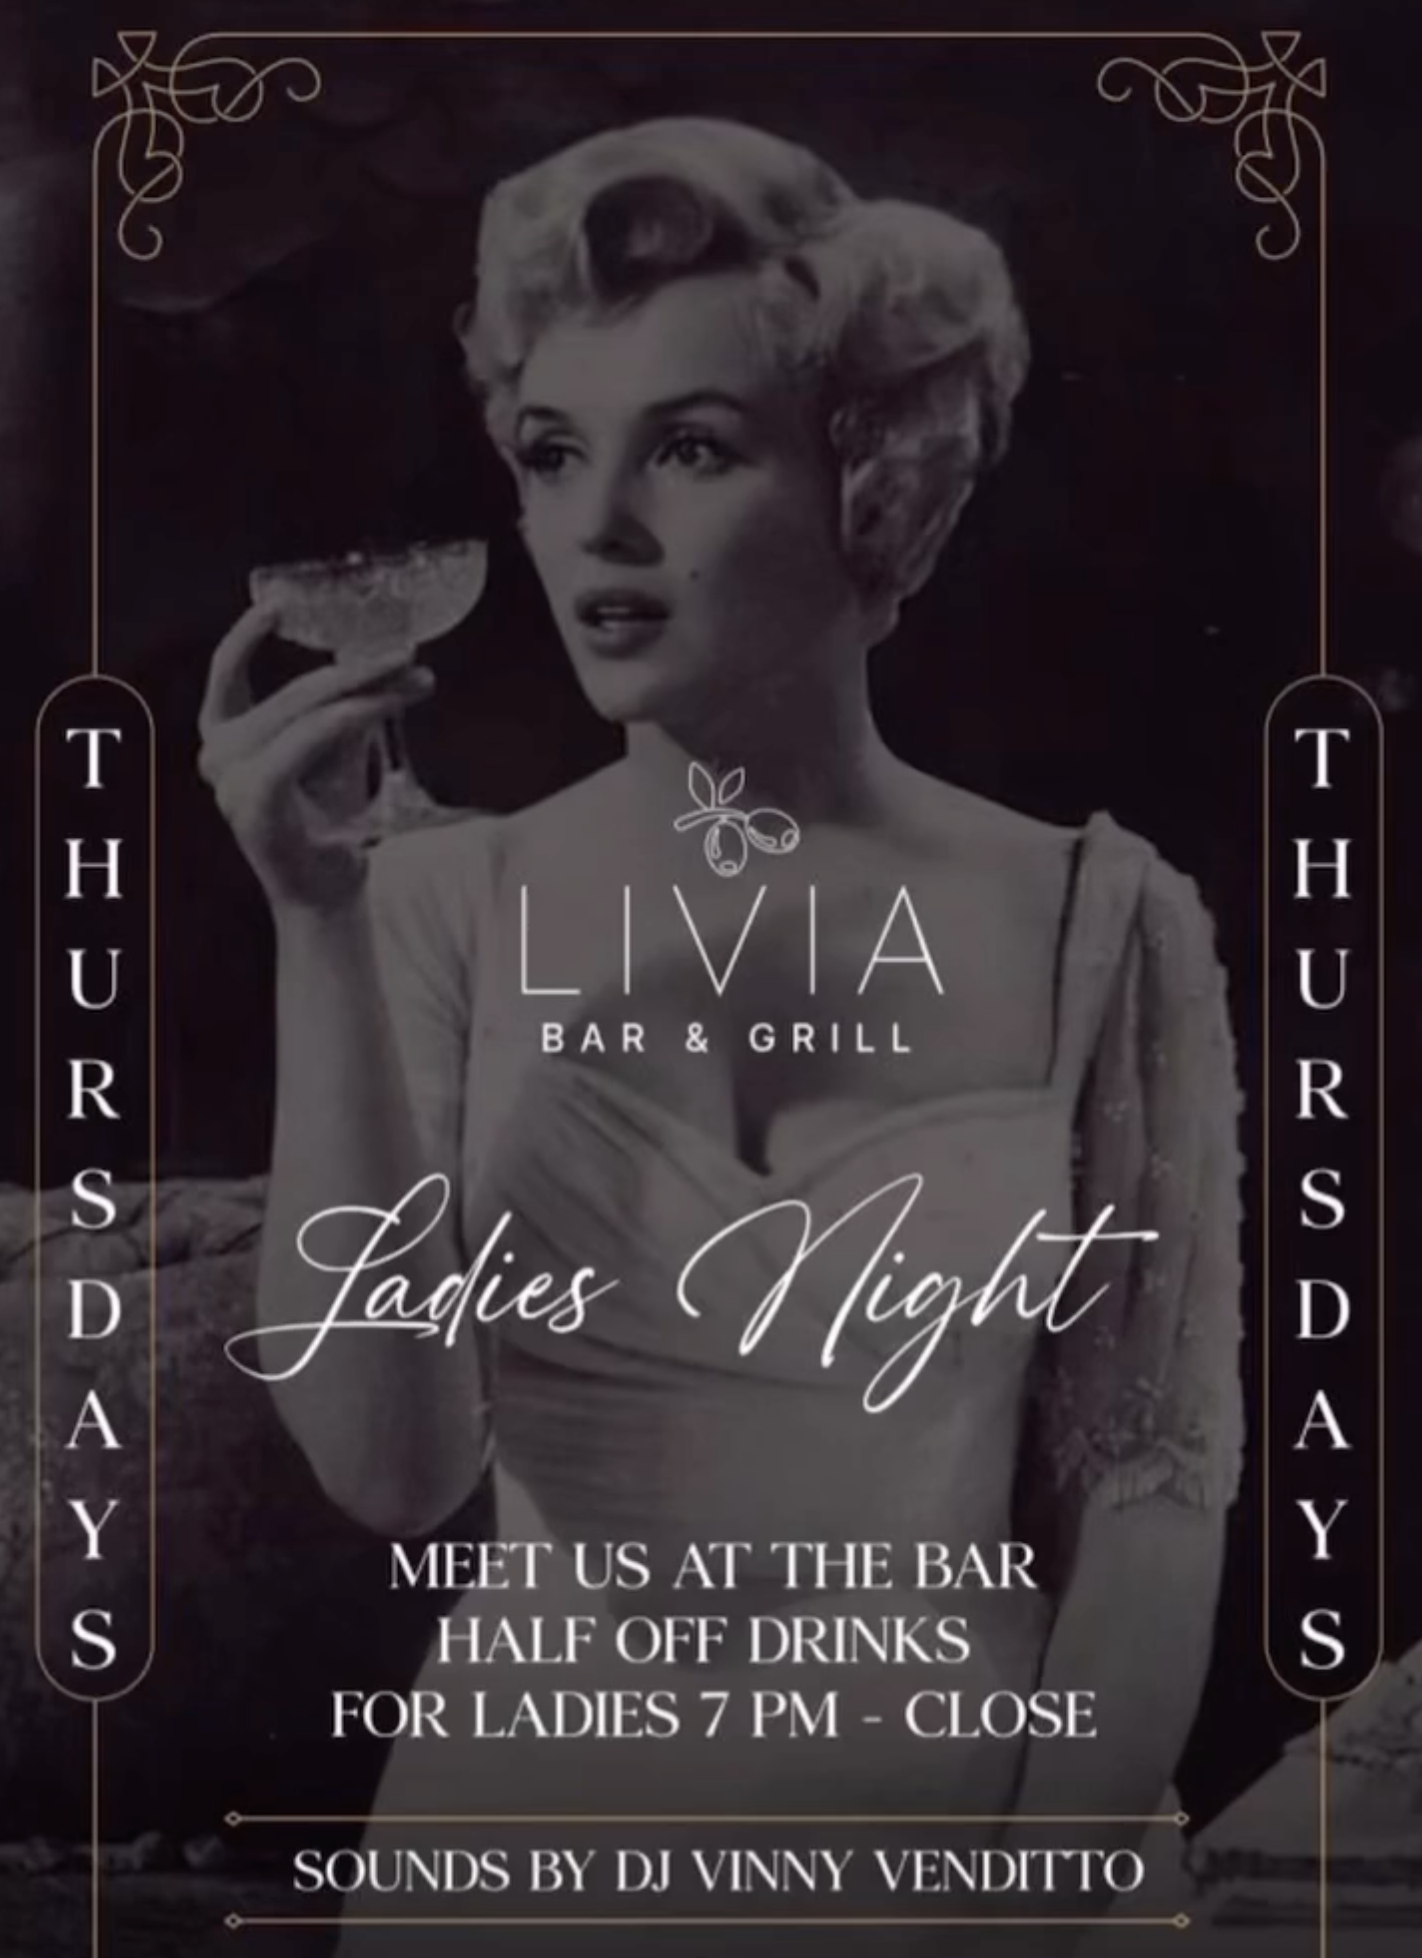 Ladies Night at Livia Bar and Grill 